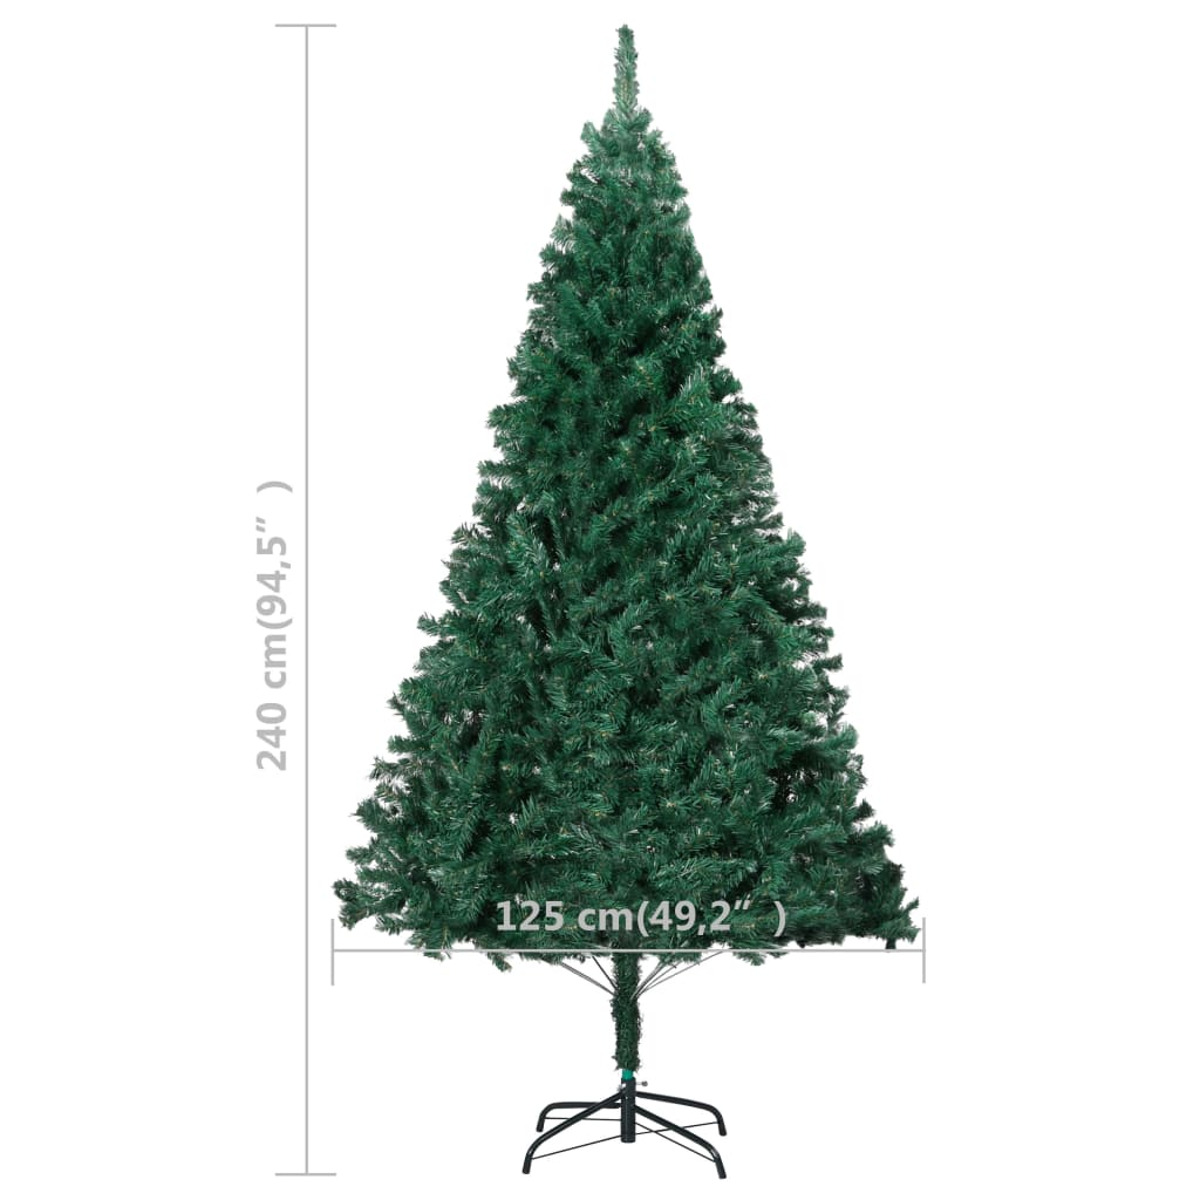 VIDAXL 3077538 Weihnachtsbaum